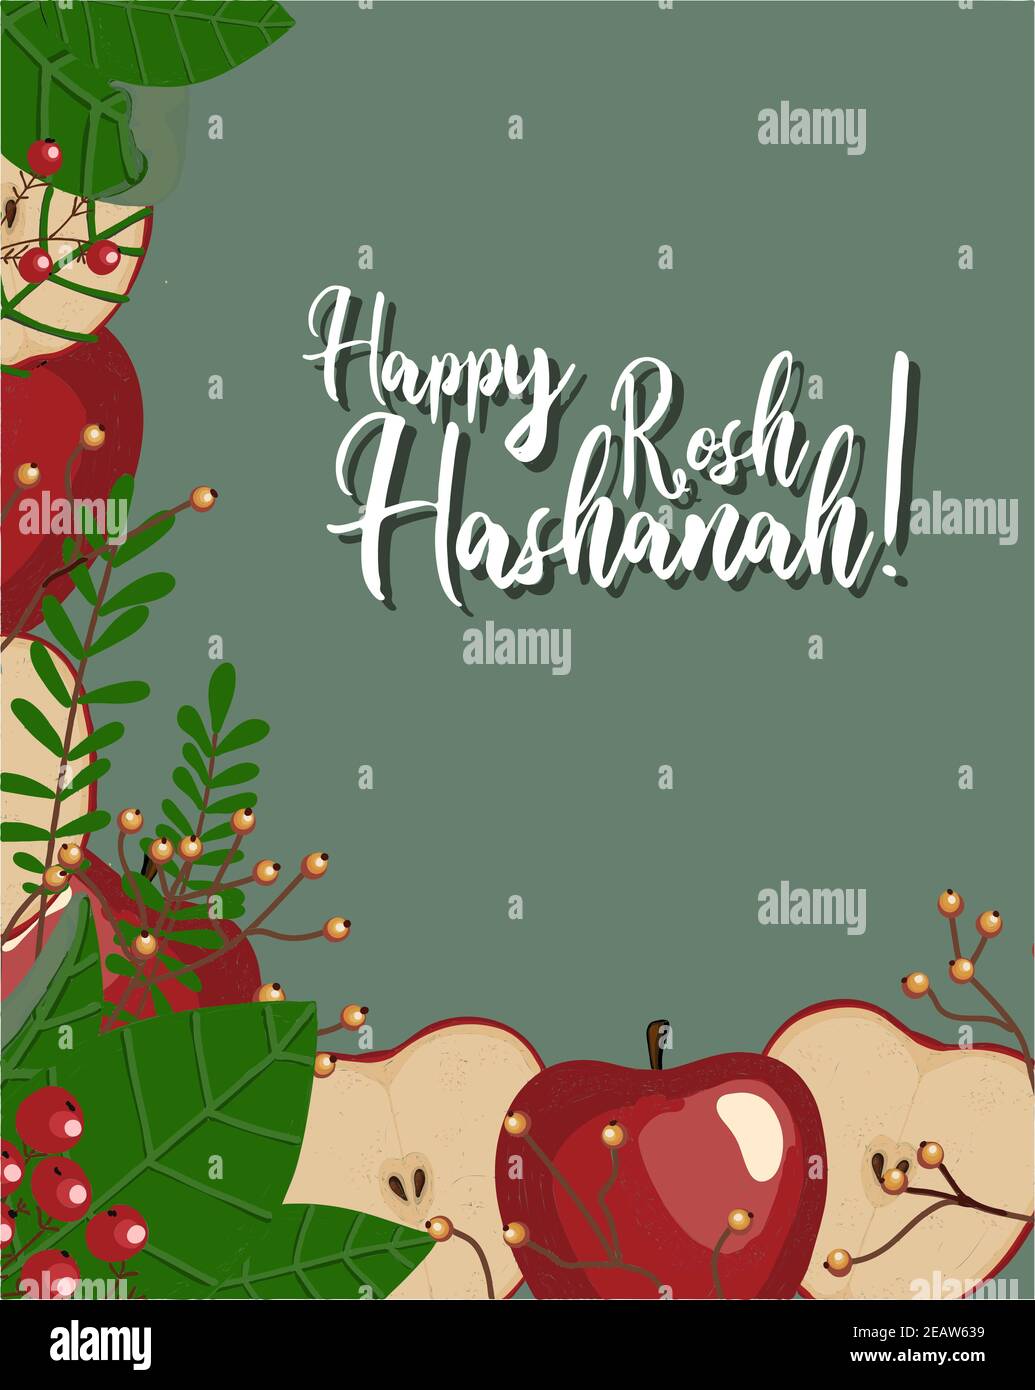 Herbstpostkarte. Roter Apfel. Herbstkomposition. Plakat zum jüdischen Neujahr. Inschrift Happy rosh hashanah. Stockfoto